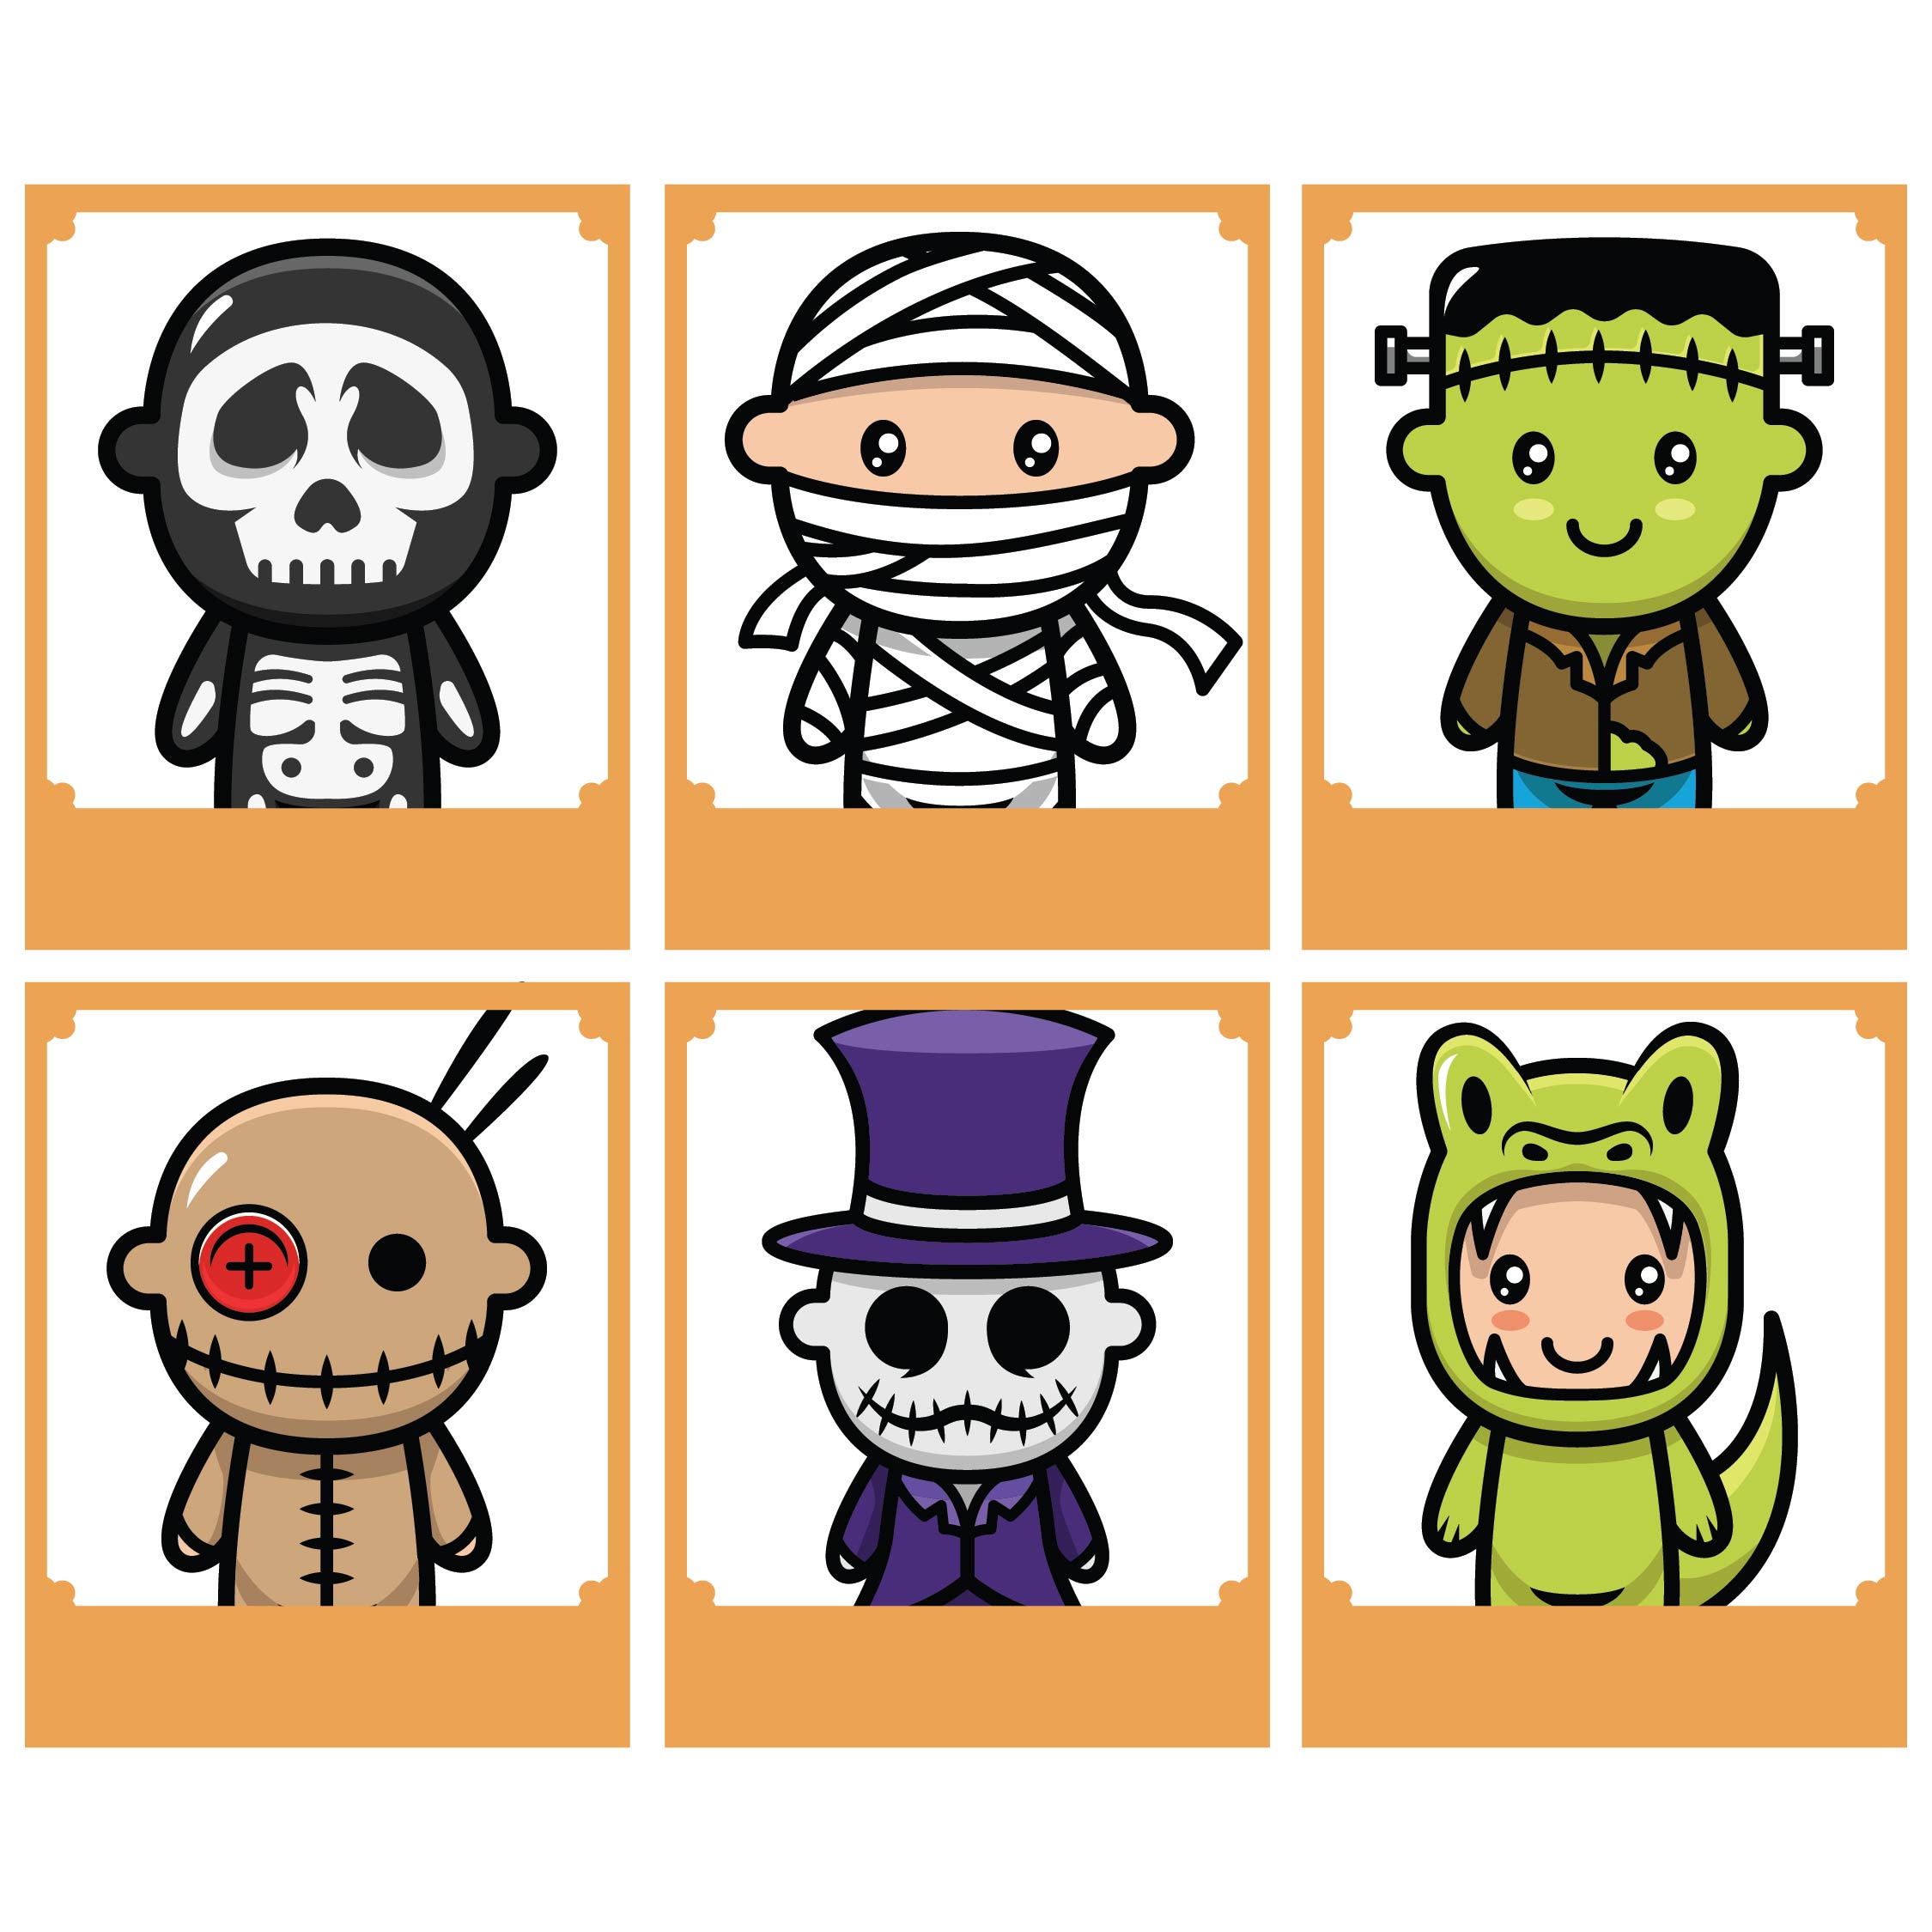 Printable Halloween Memory Game